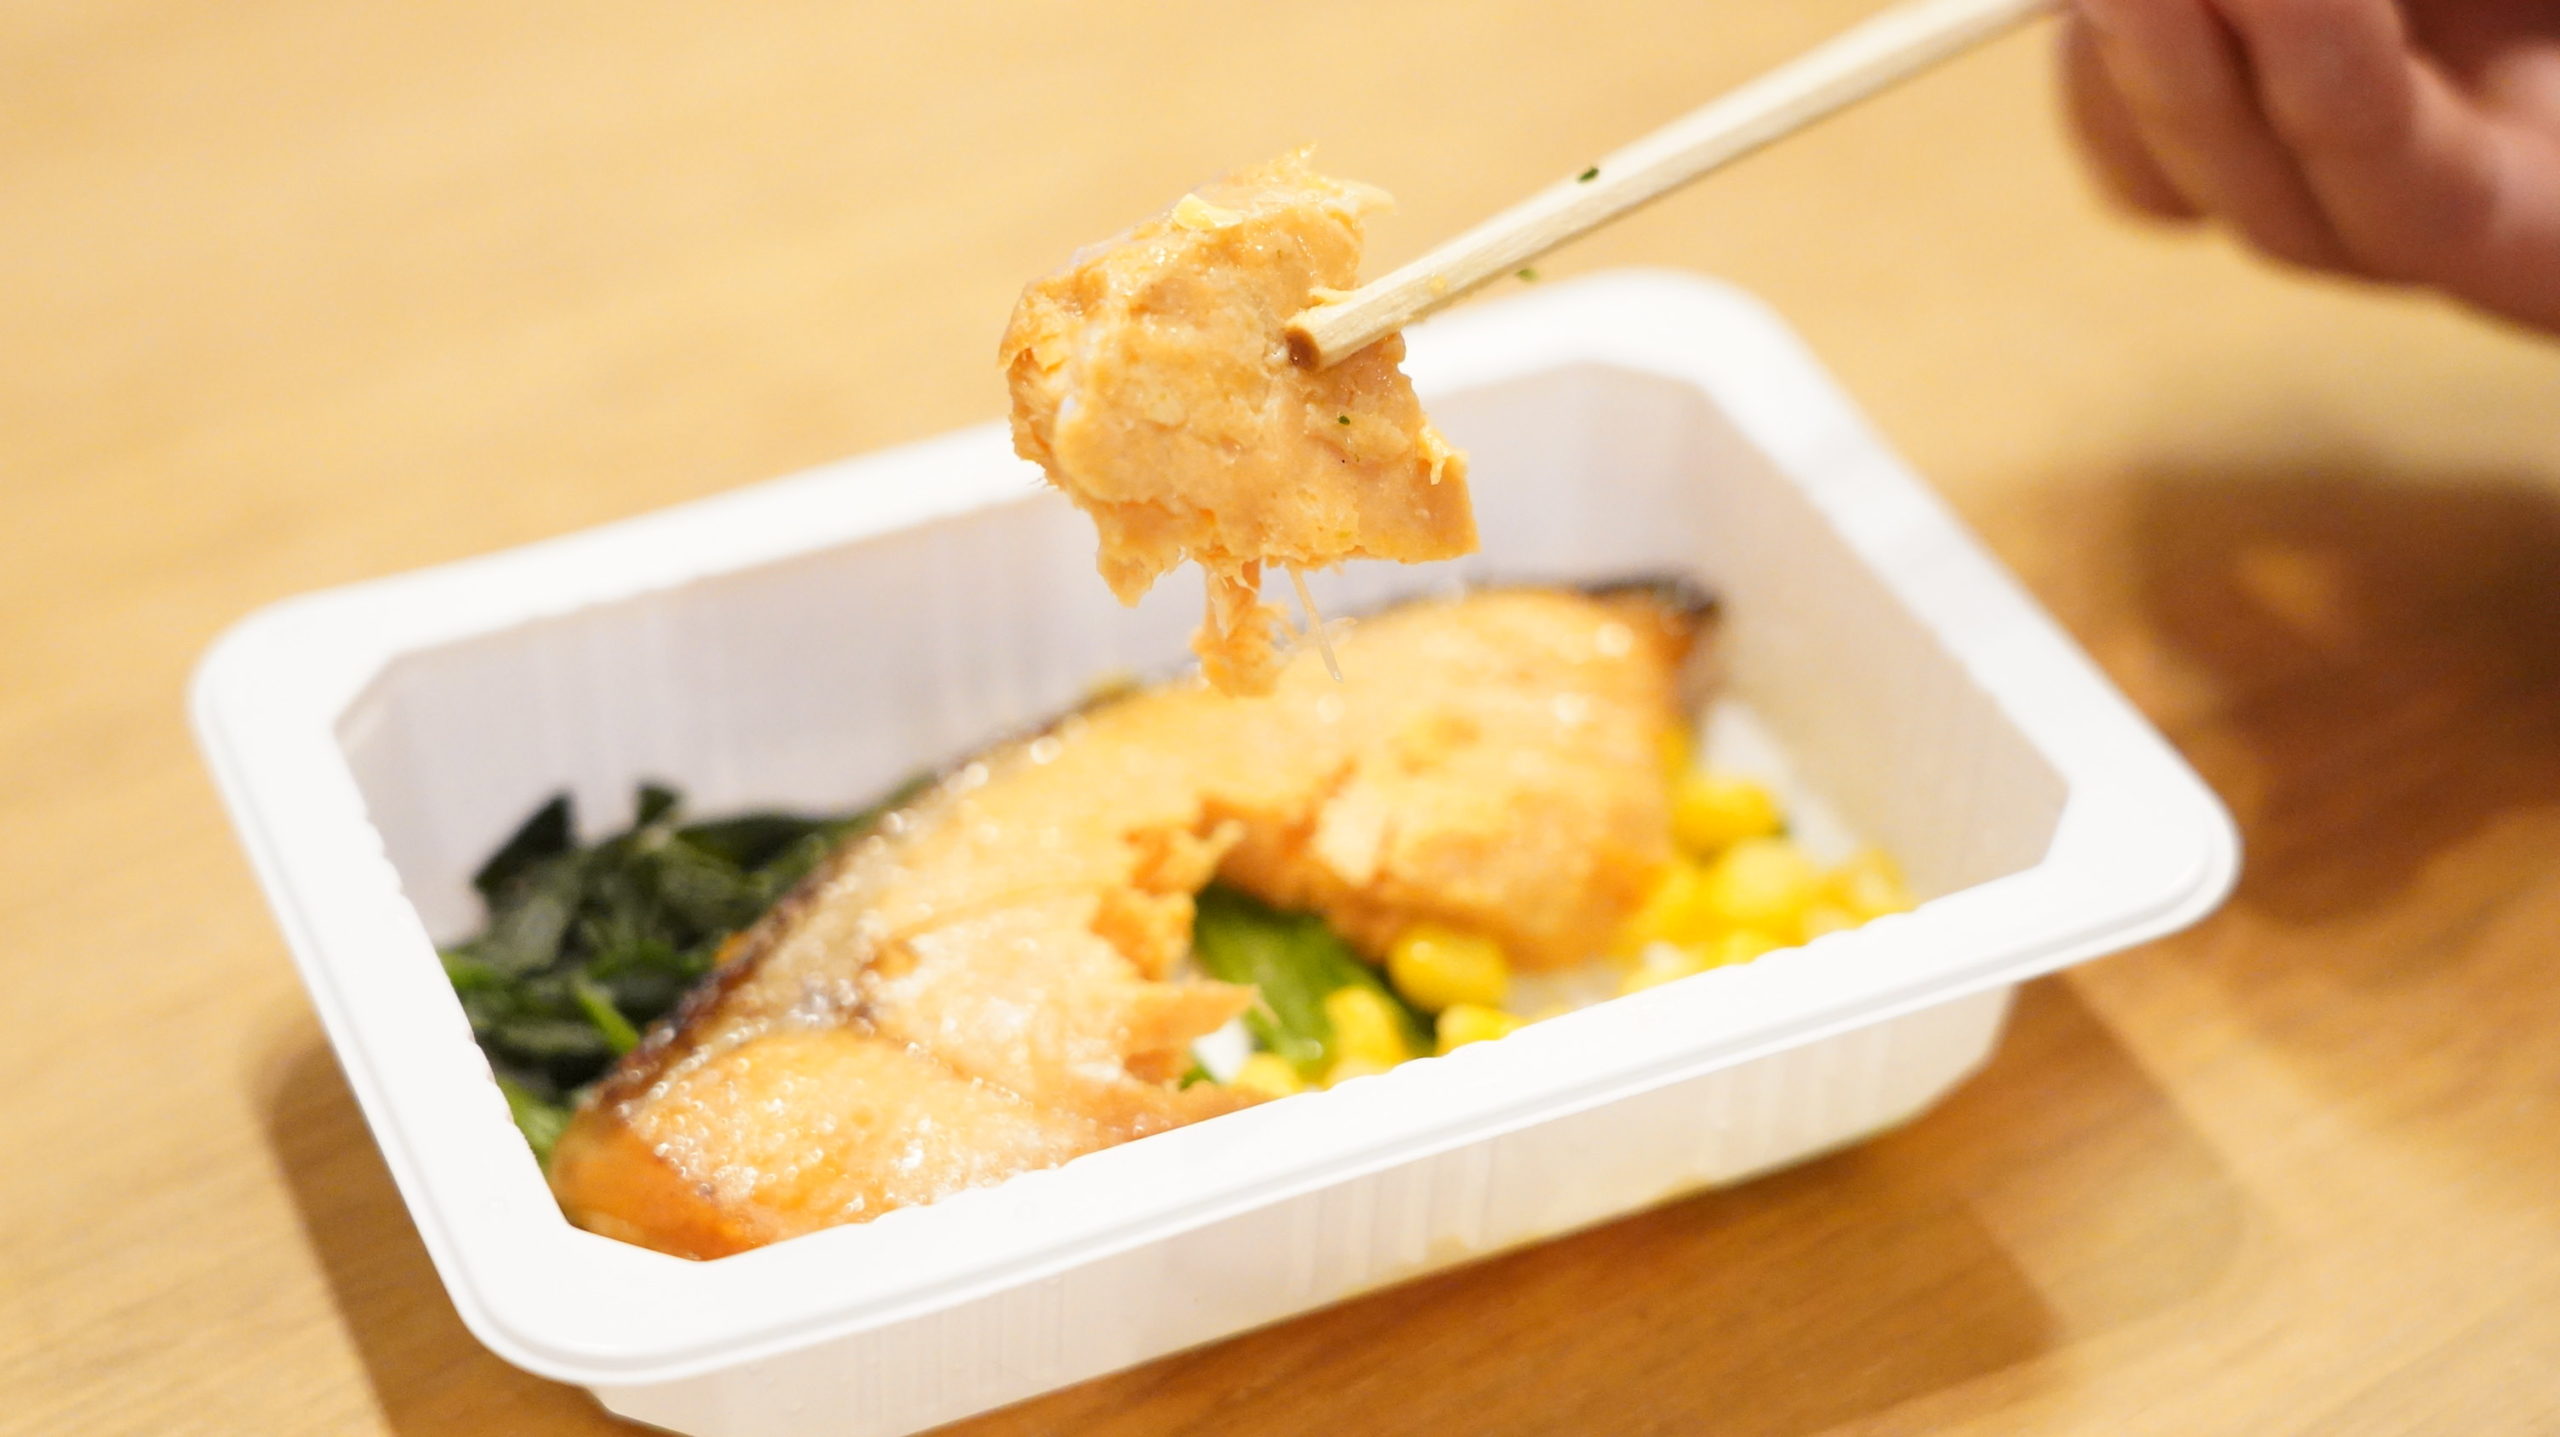 セブンイレブンのおすすめ冷凍食品「銀鮭のバター醤油焼き」を箸でつまんでいる写真